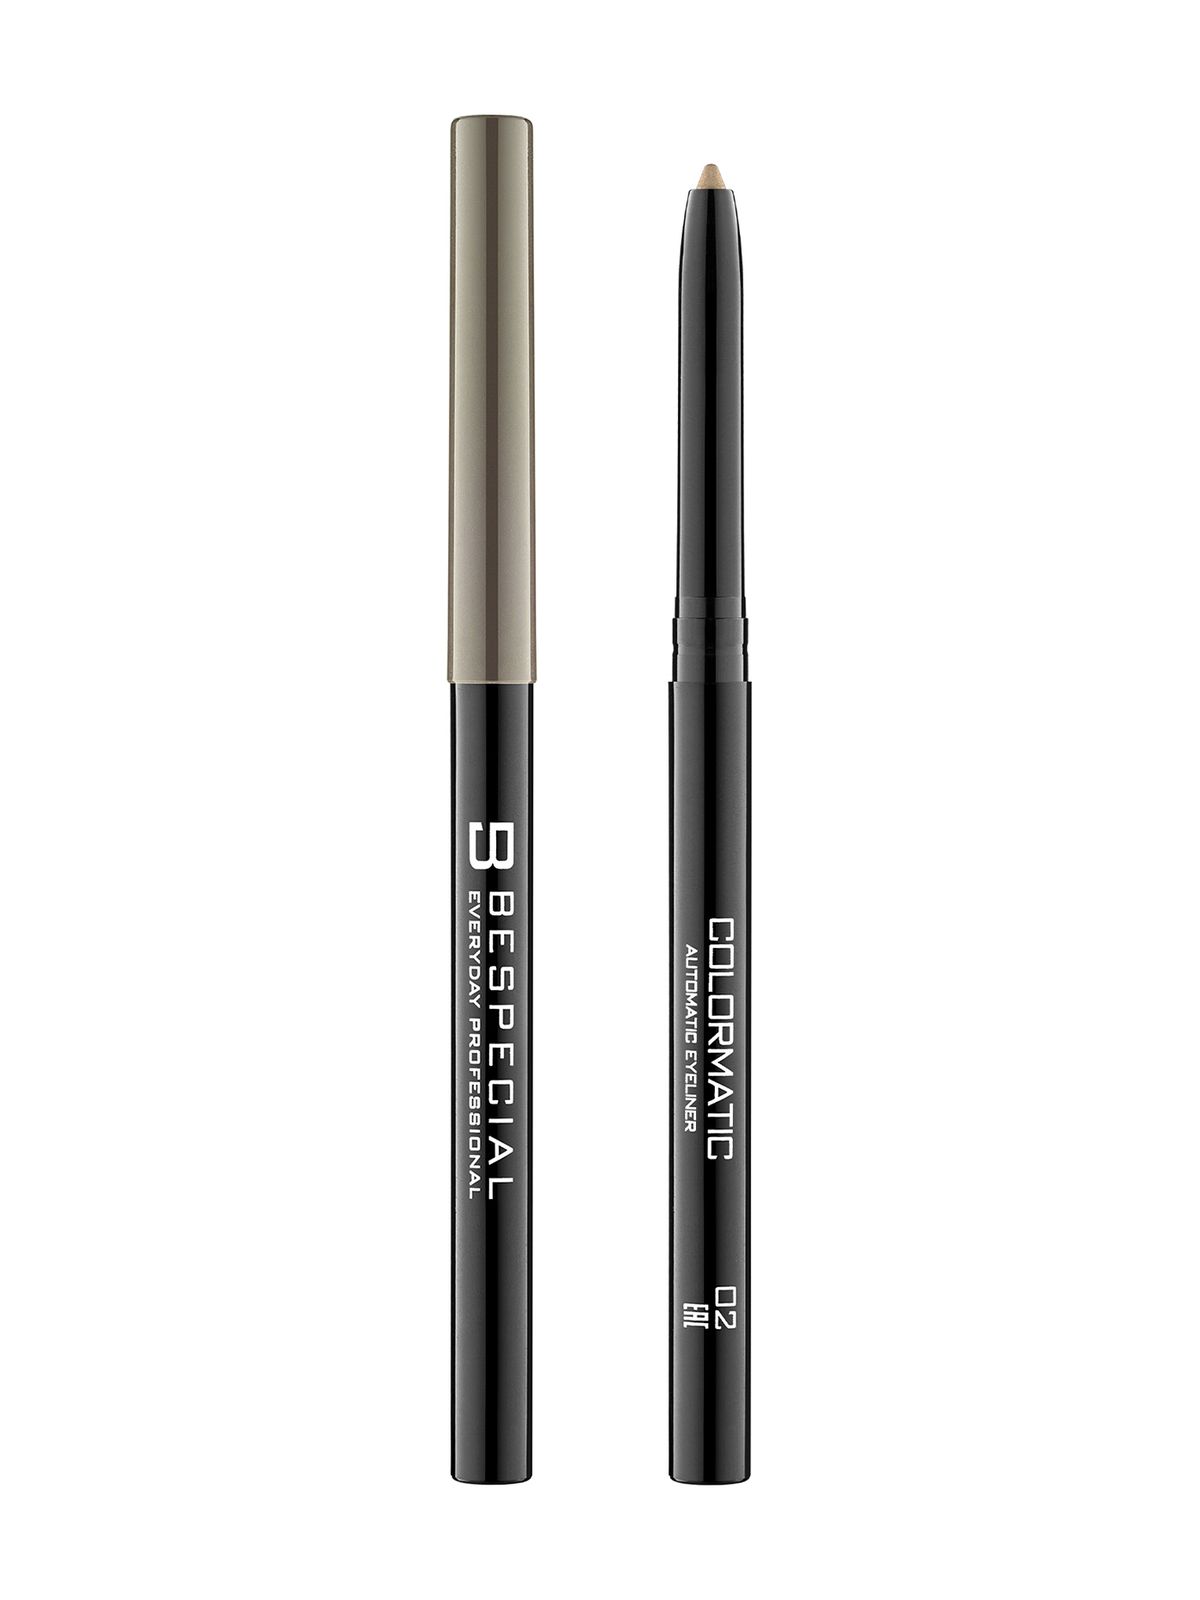 Механический карандаш для глаз Bespecial Colormatic Eye Pencil карандаш для глаз shinewell charm pencil т 2 графитовый